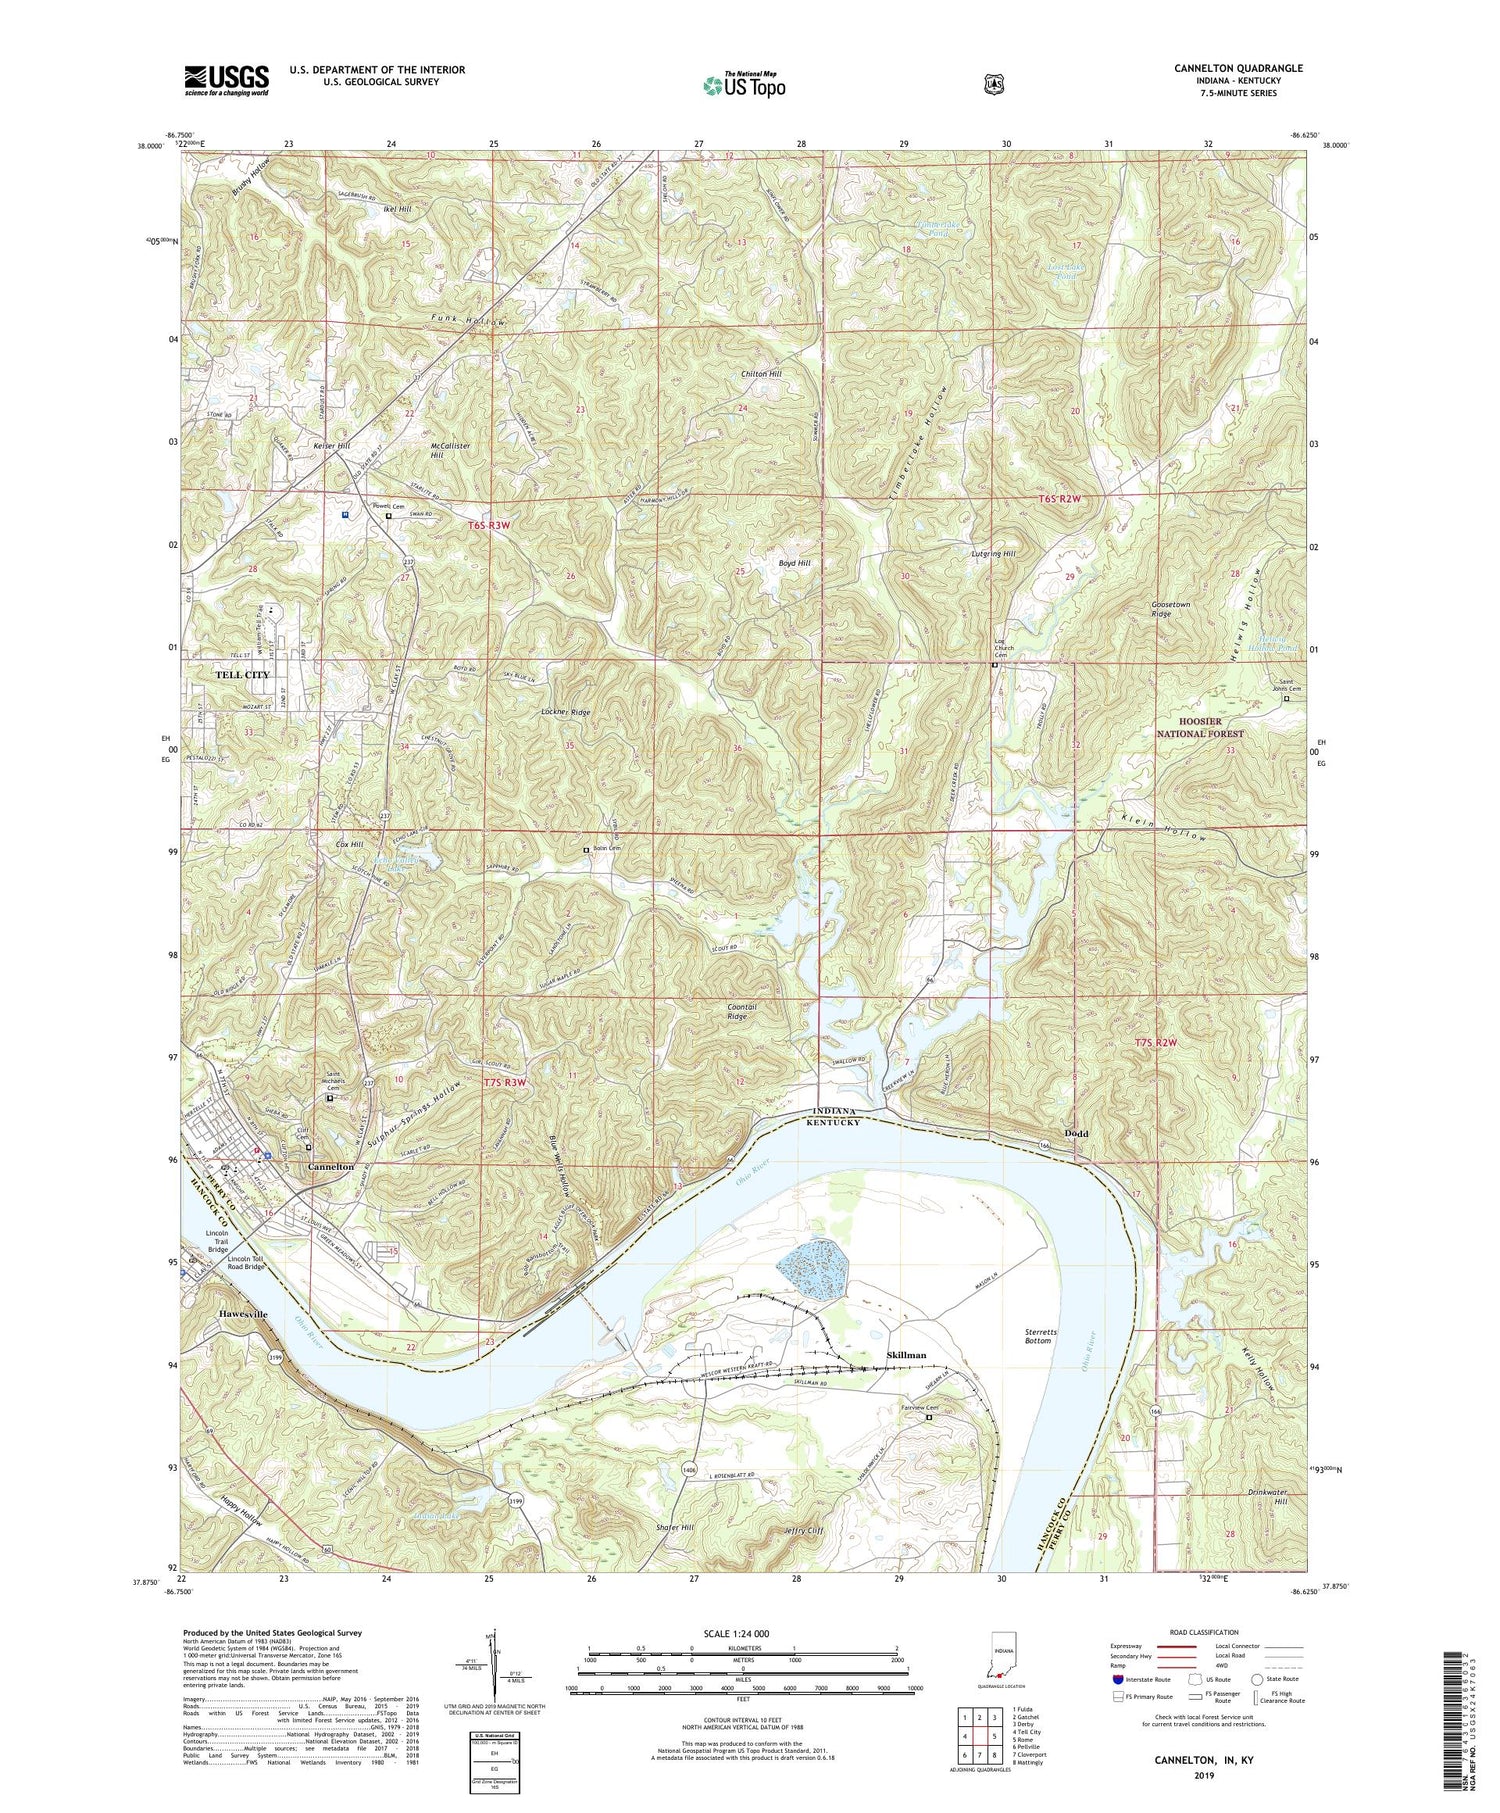 Cannelton Indiana US Topo Map Image